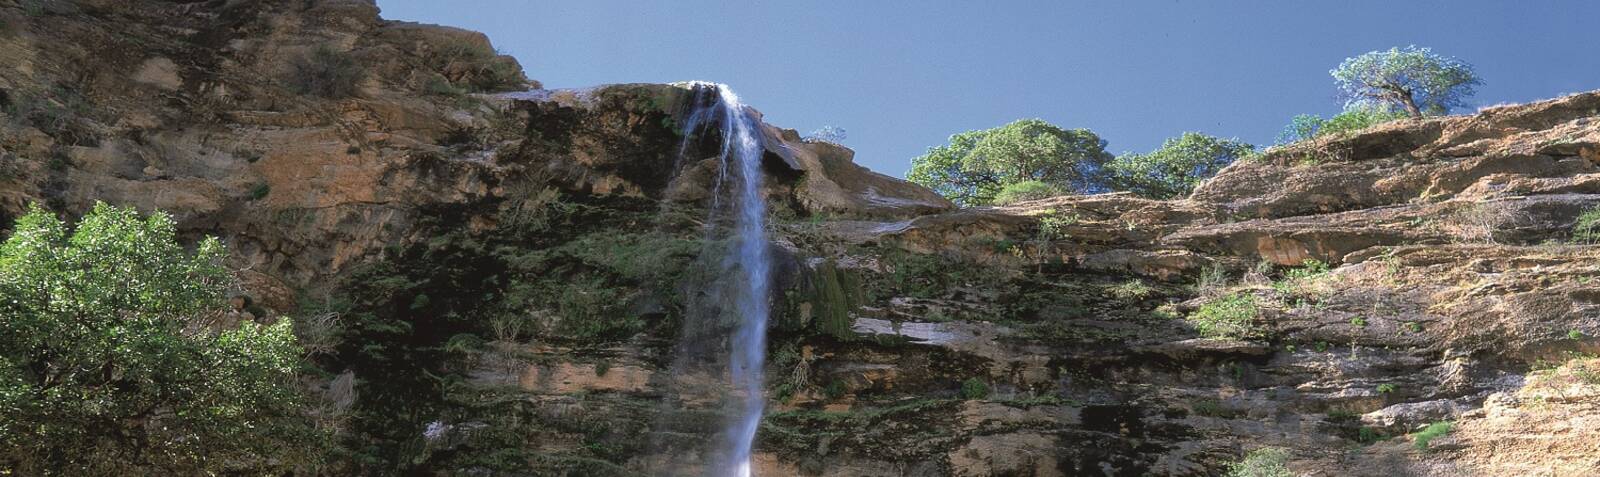 Tuf Kheymeh waterfall in Suq